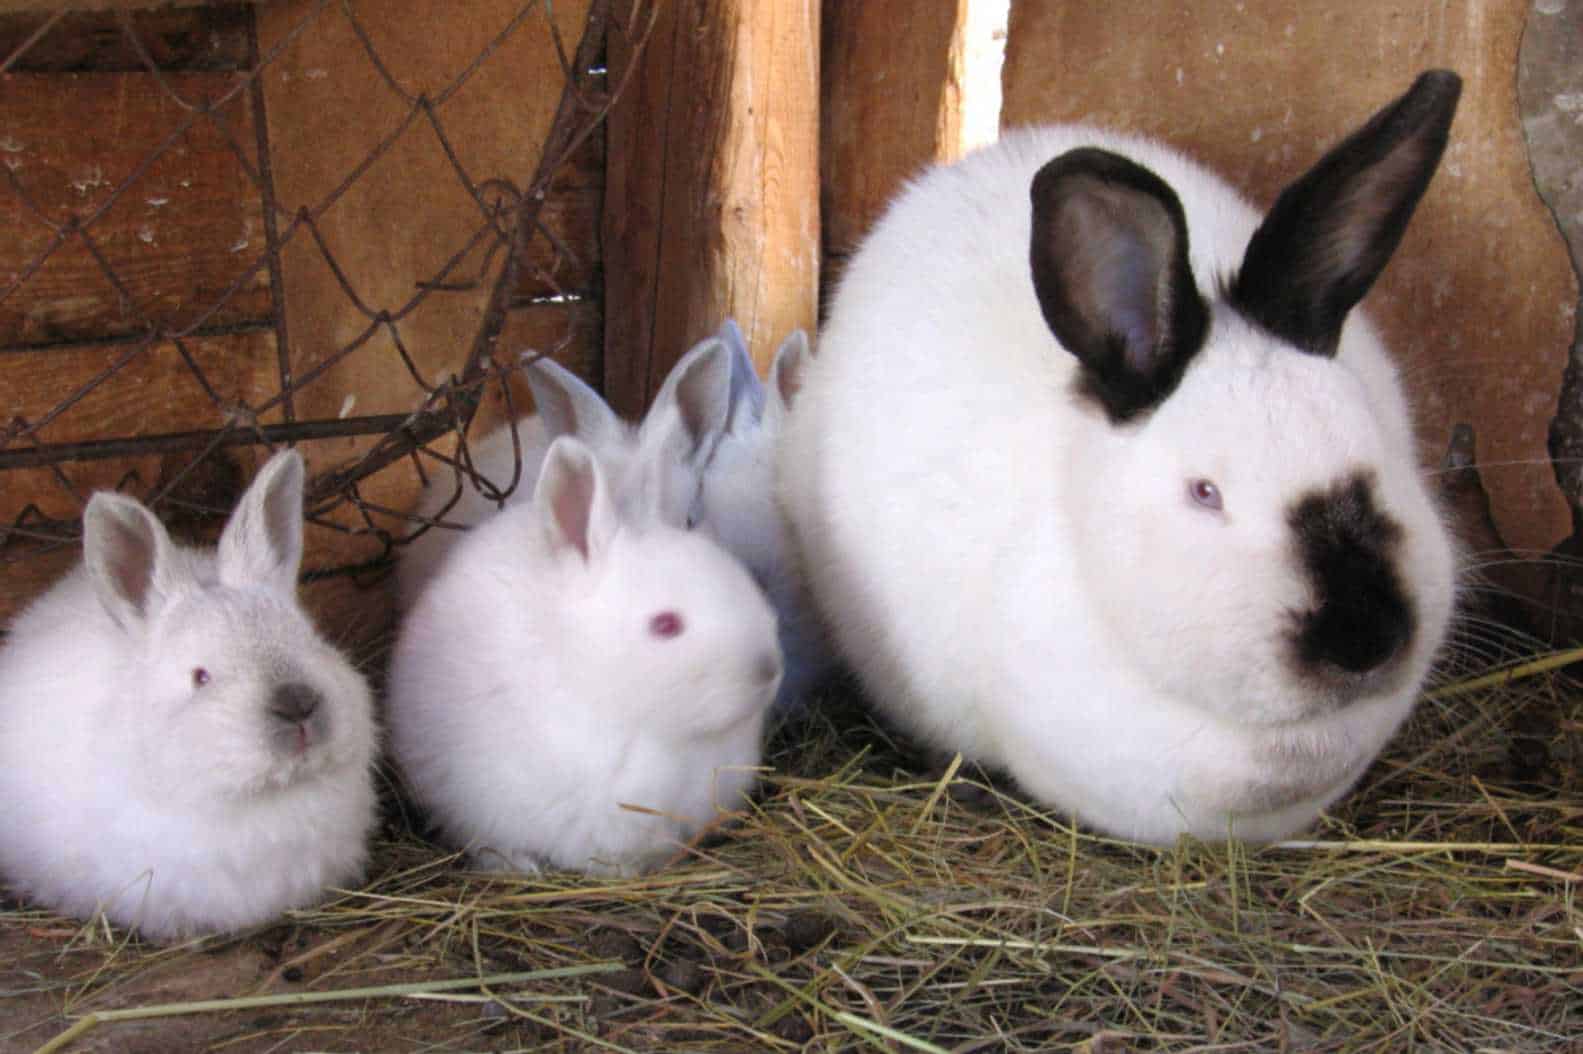 sexing baby bunnies